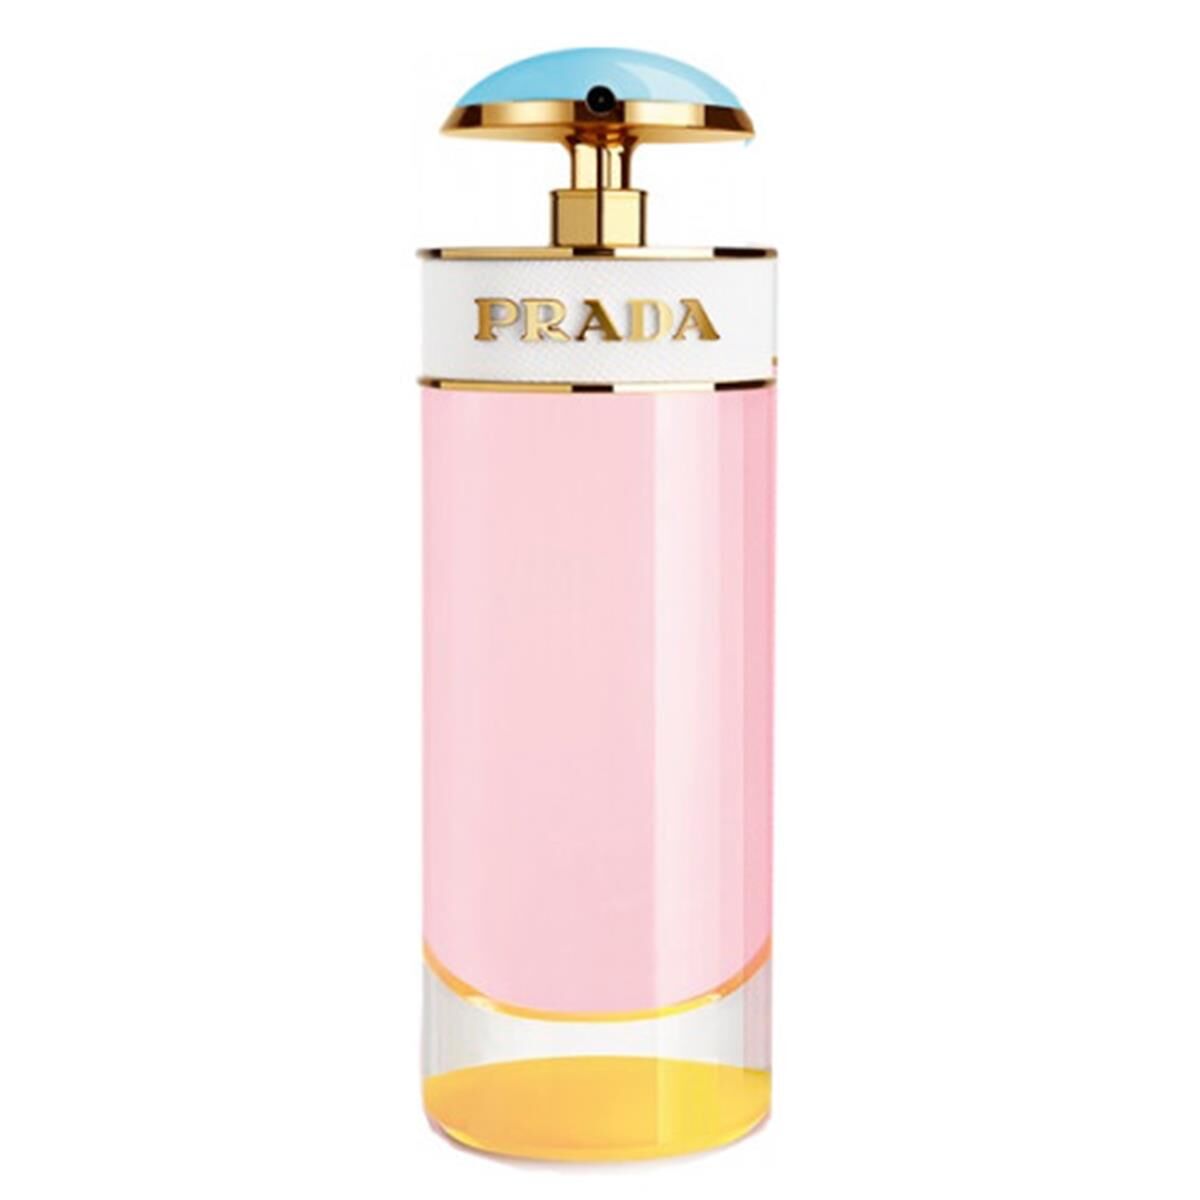 Prada 307563 2.7 oz Eau De Parfum Spray Candy Sugar Pop for Women One Size female